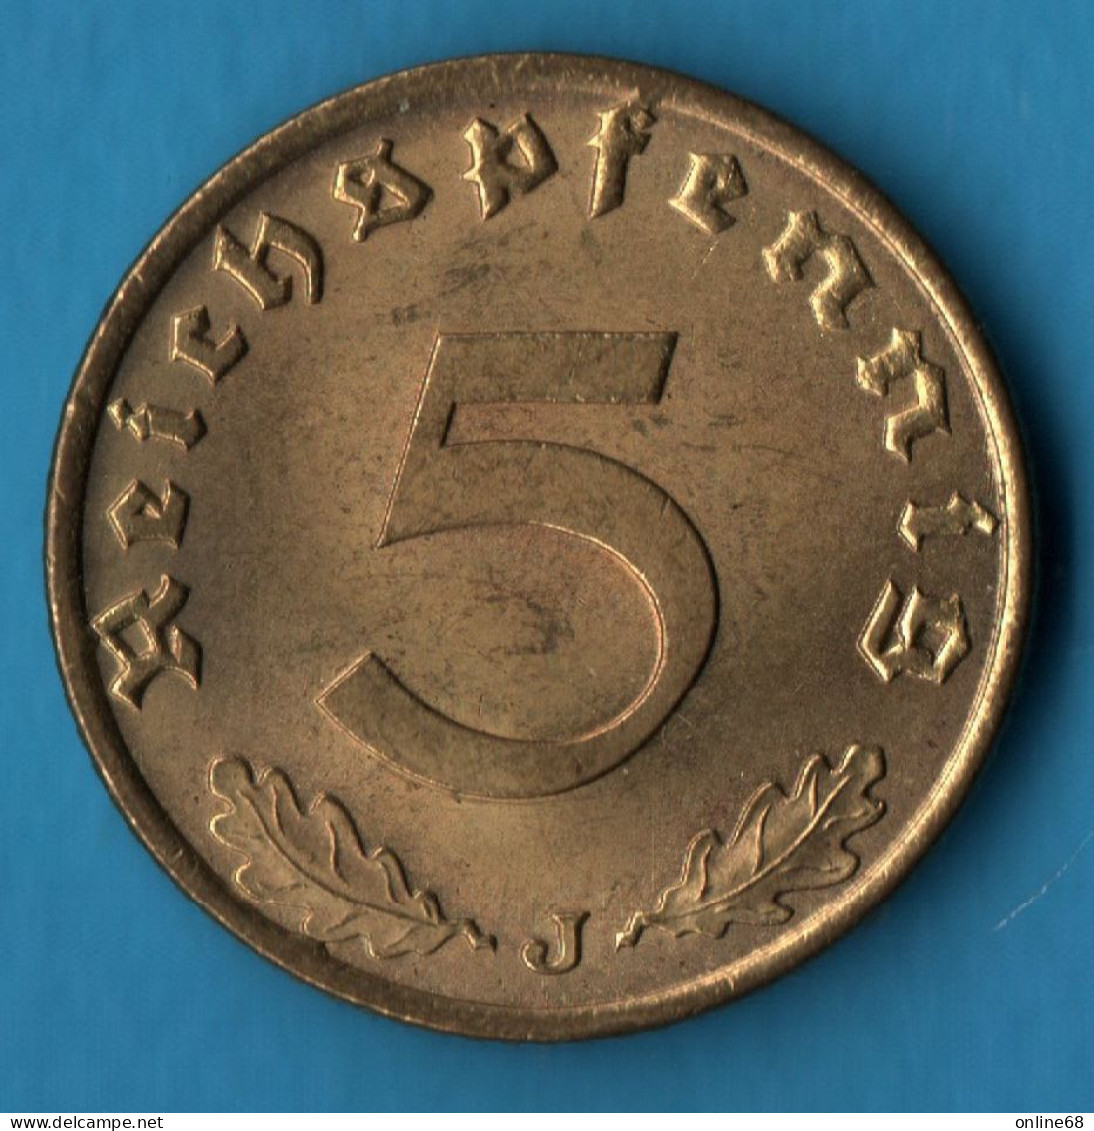 DEUTSCHES REICH 5 REICHSPFENNIG 1939 J KM# 91 Svastika - 5 Reichspfennig